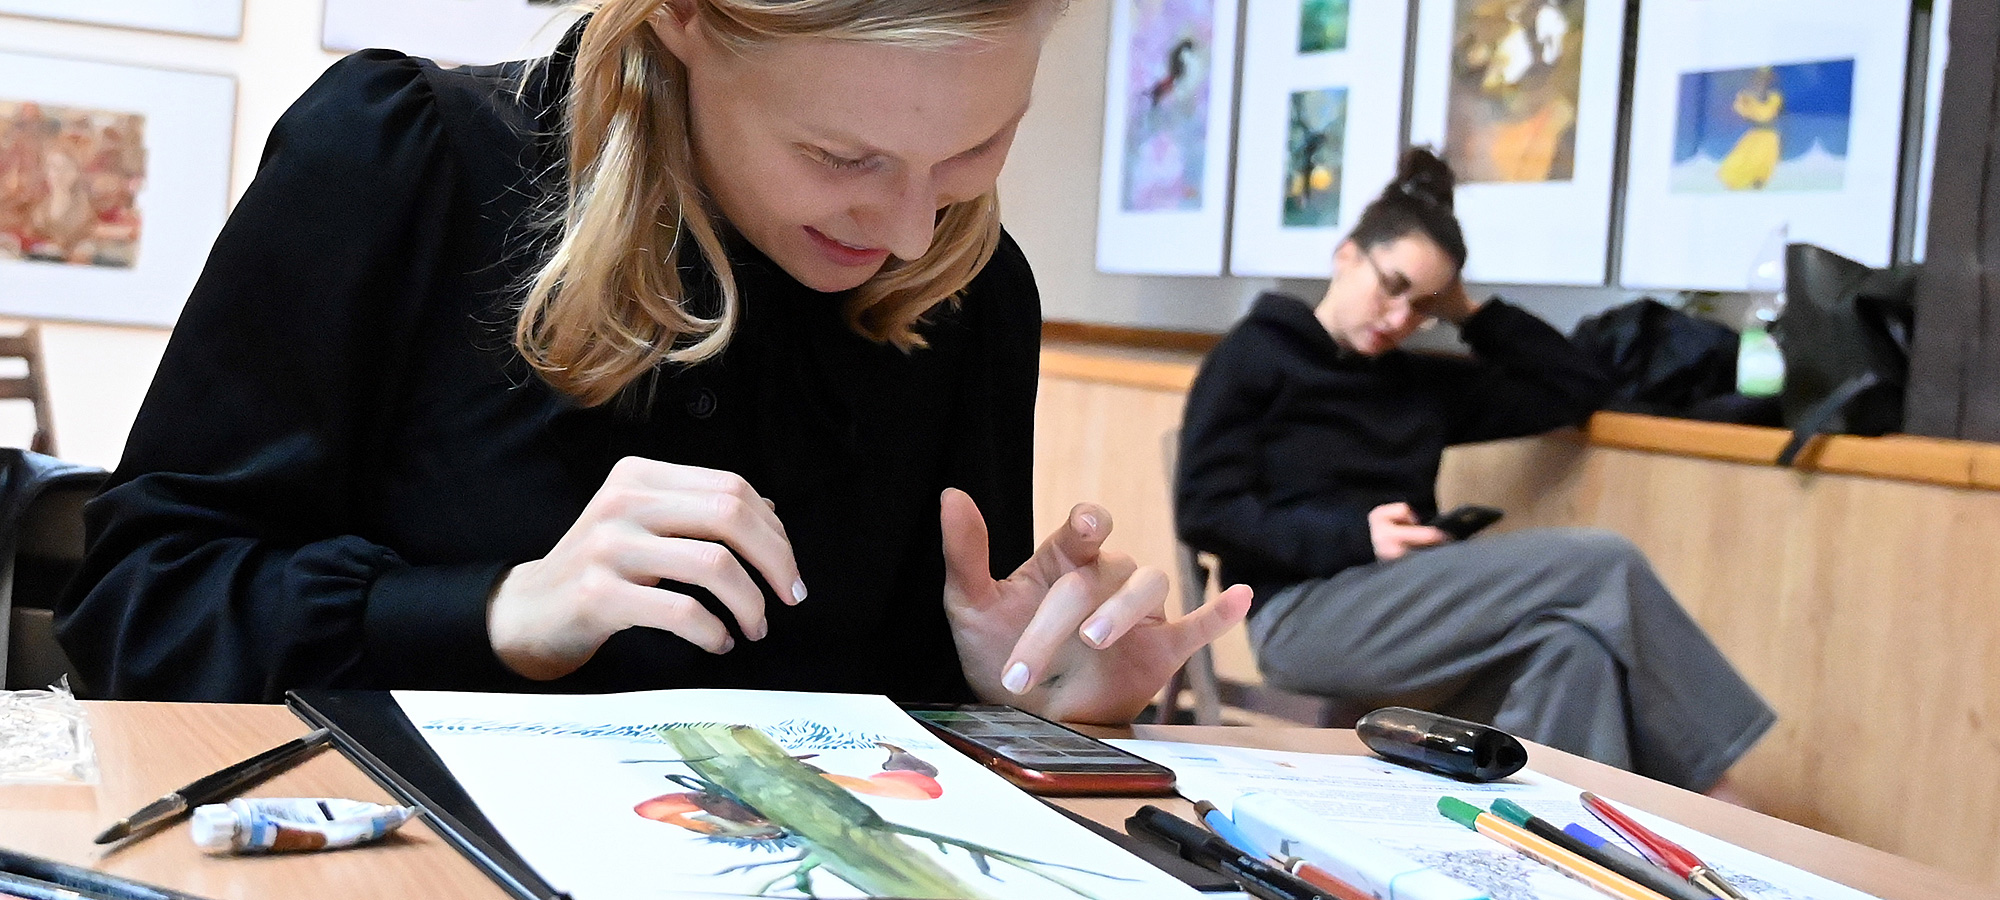 Uśmiechnięta młoda artystka- uczestniczka warsztatów podczas tworzenia ilustracji. Przed nią na stole rozłożone różne przybory malarskie.  